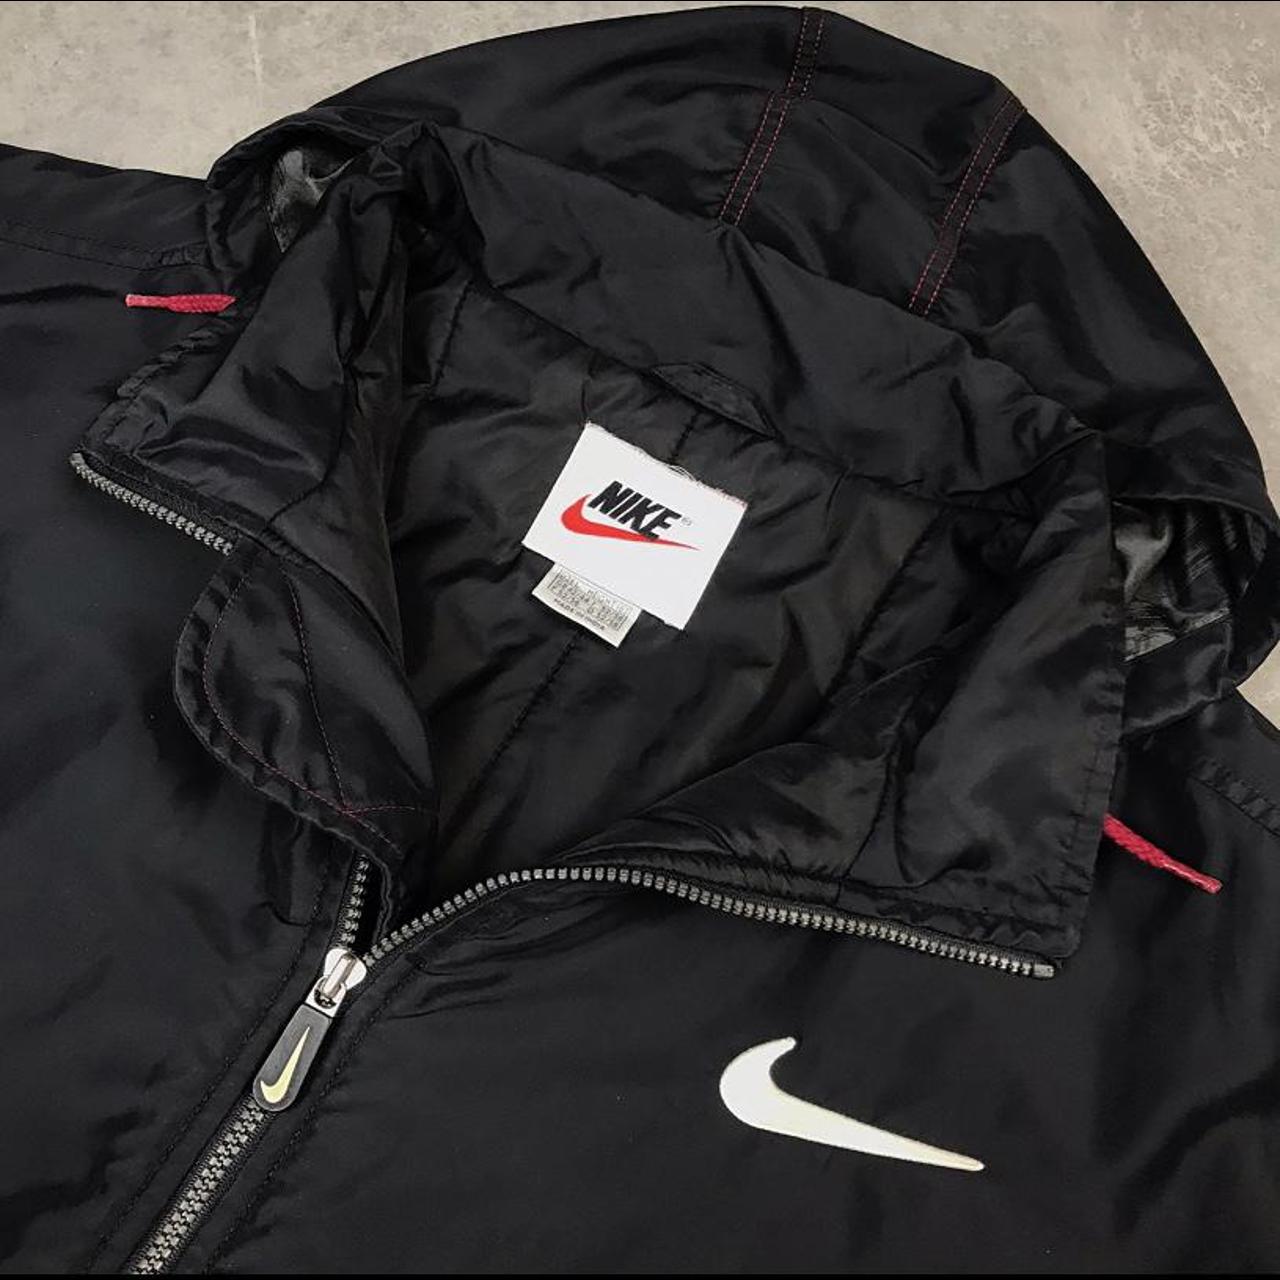 Vintage Nike jacket black and red super good quality... - Depop